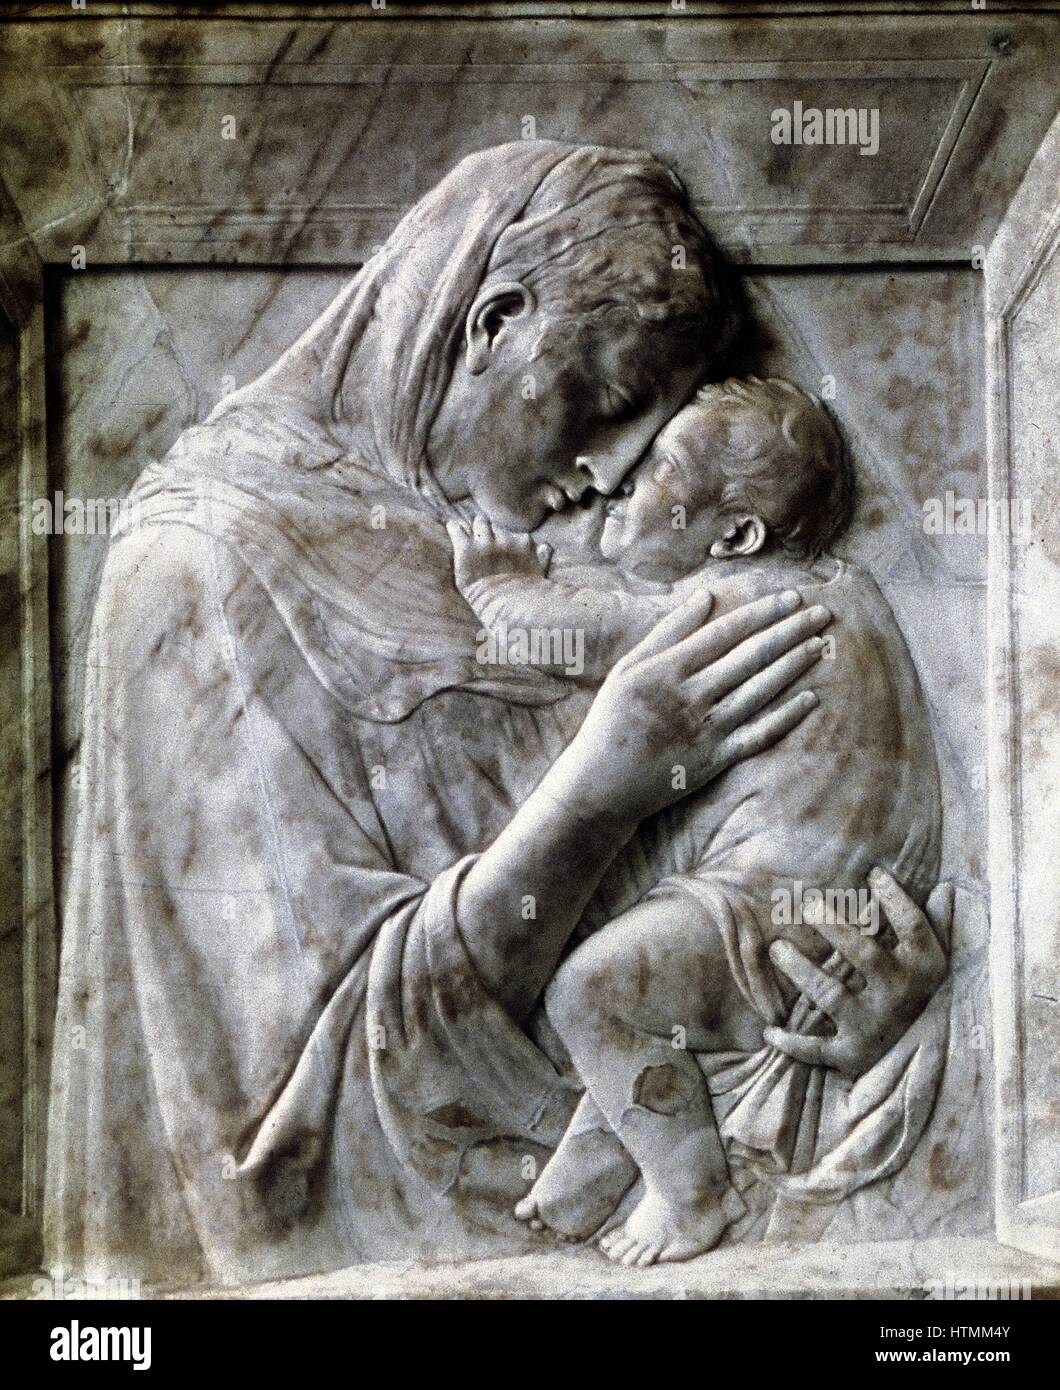 DONATELLO (c1386-1466) lo scultore fiorentino. Italiano. La Madonna Pazzi (vergine con il bambino) marmo, c1417-18. Staatliche Museen zu Berlin Foto Stock